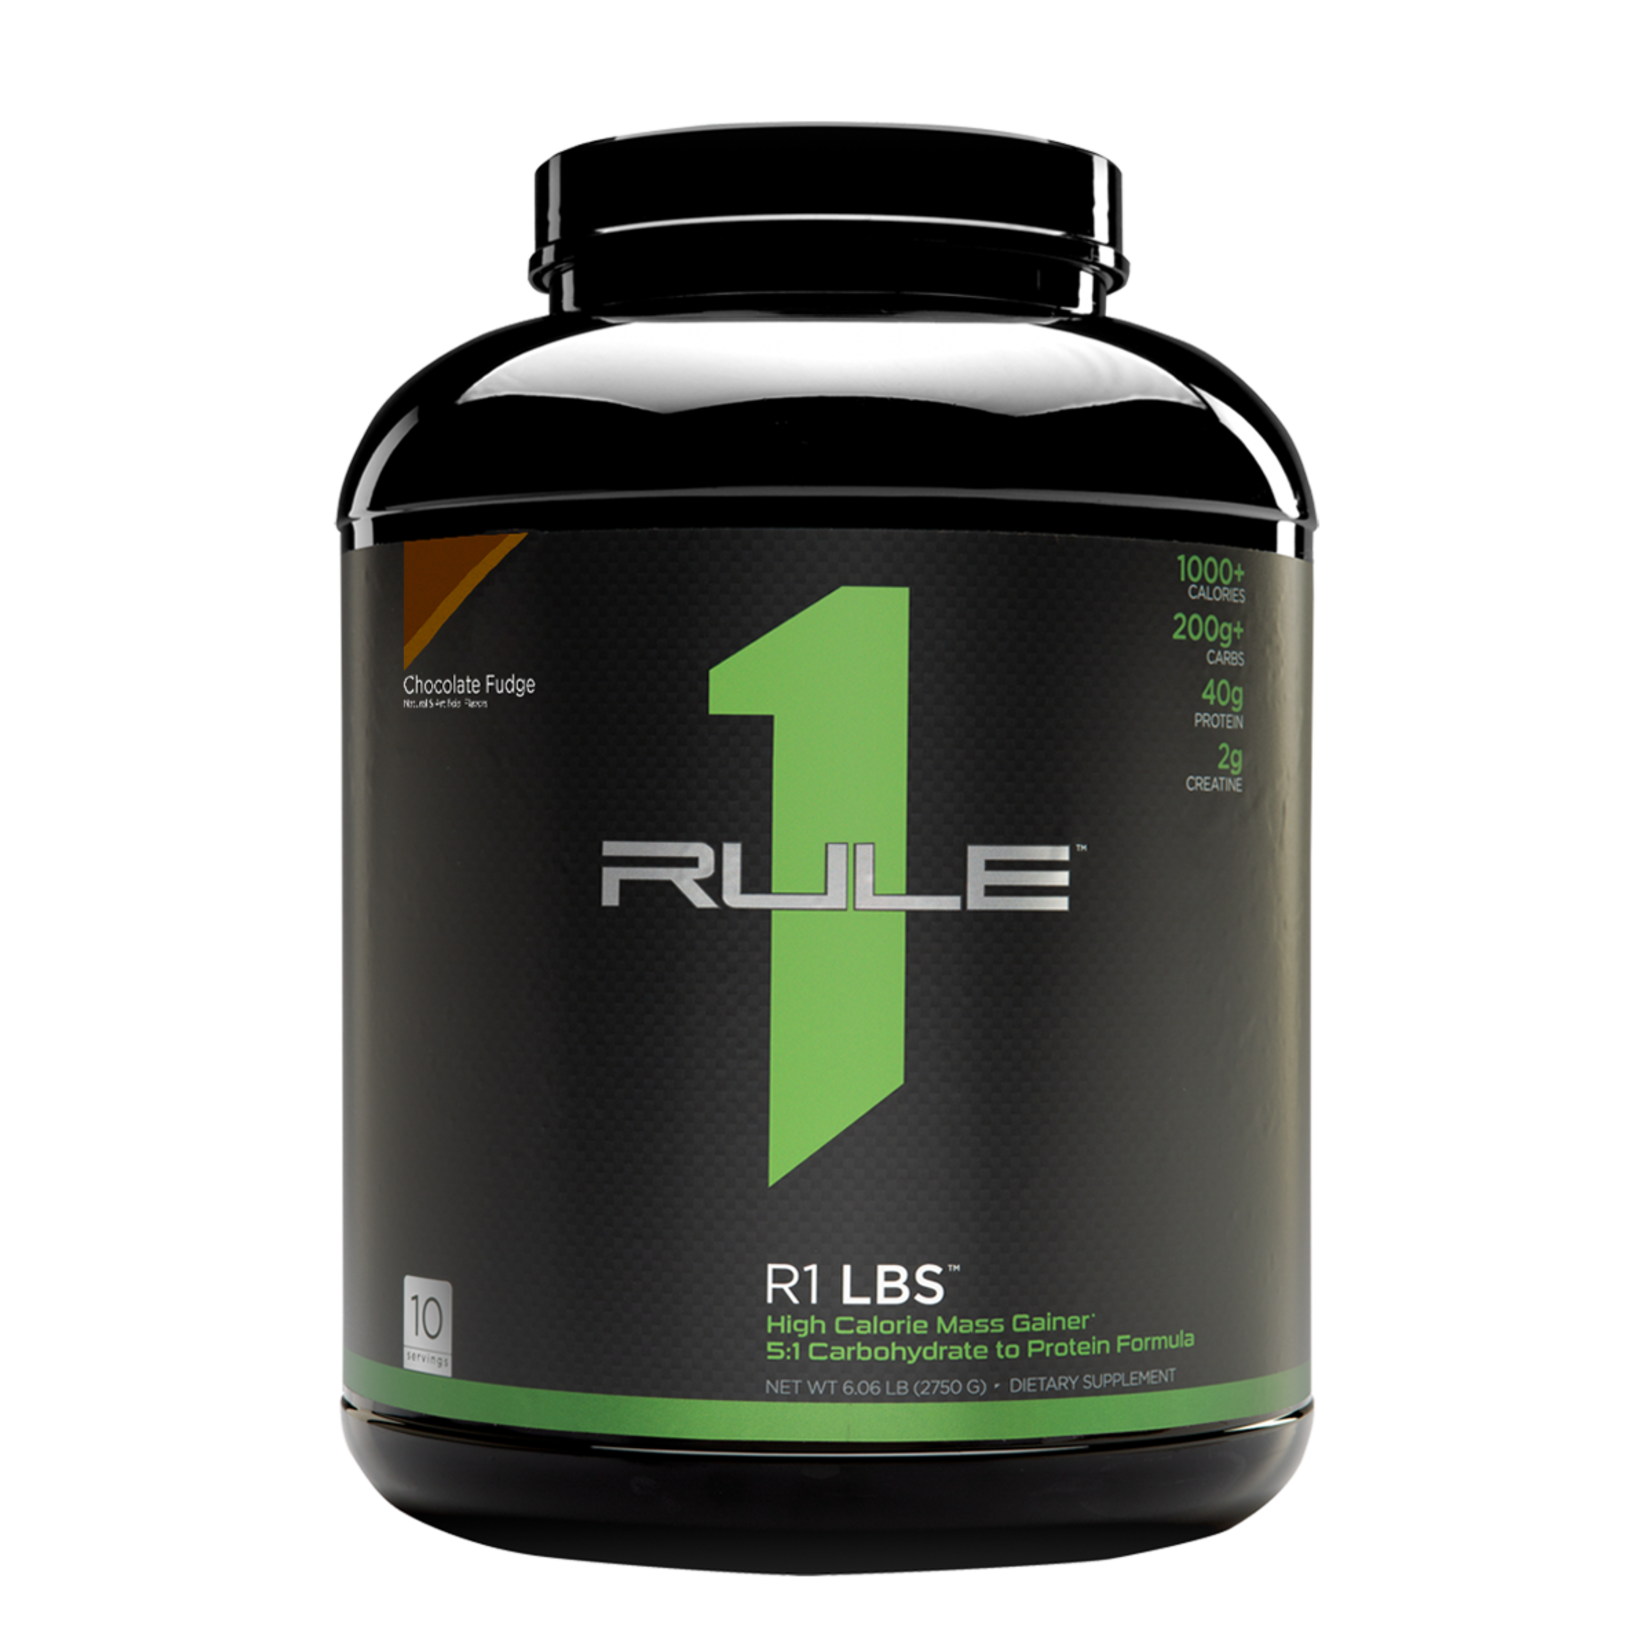 Rule 1 - R1 LBS - Weight gain formula - TRU·FIT